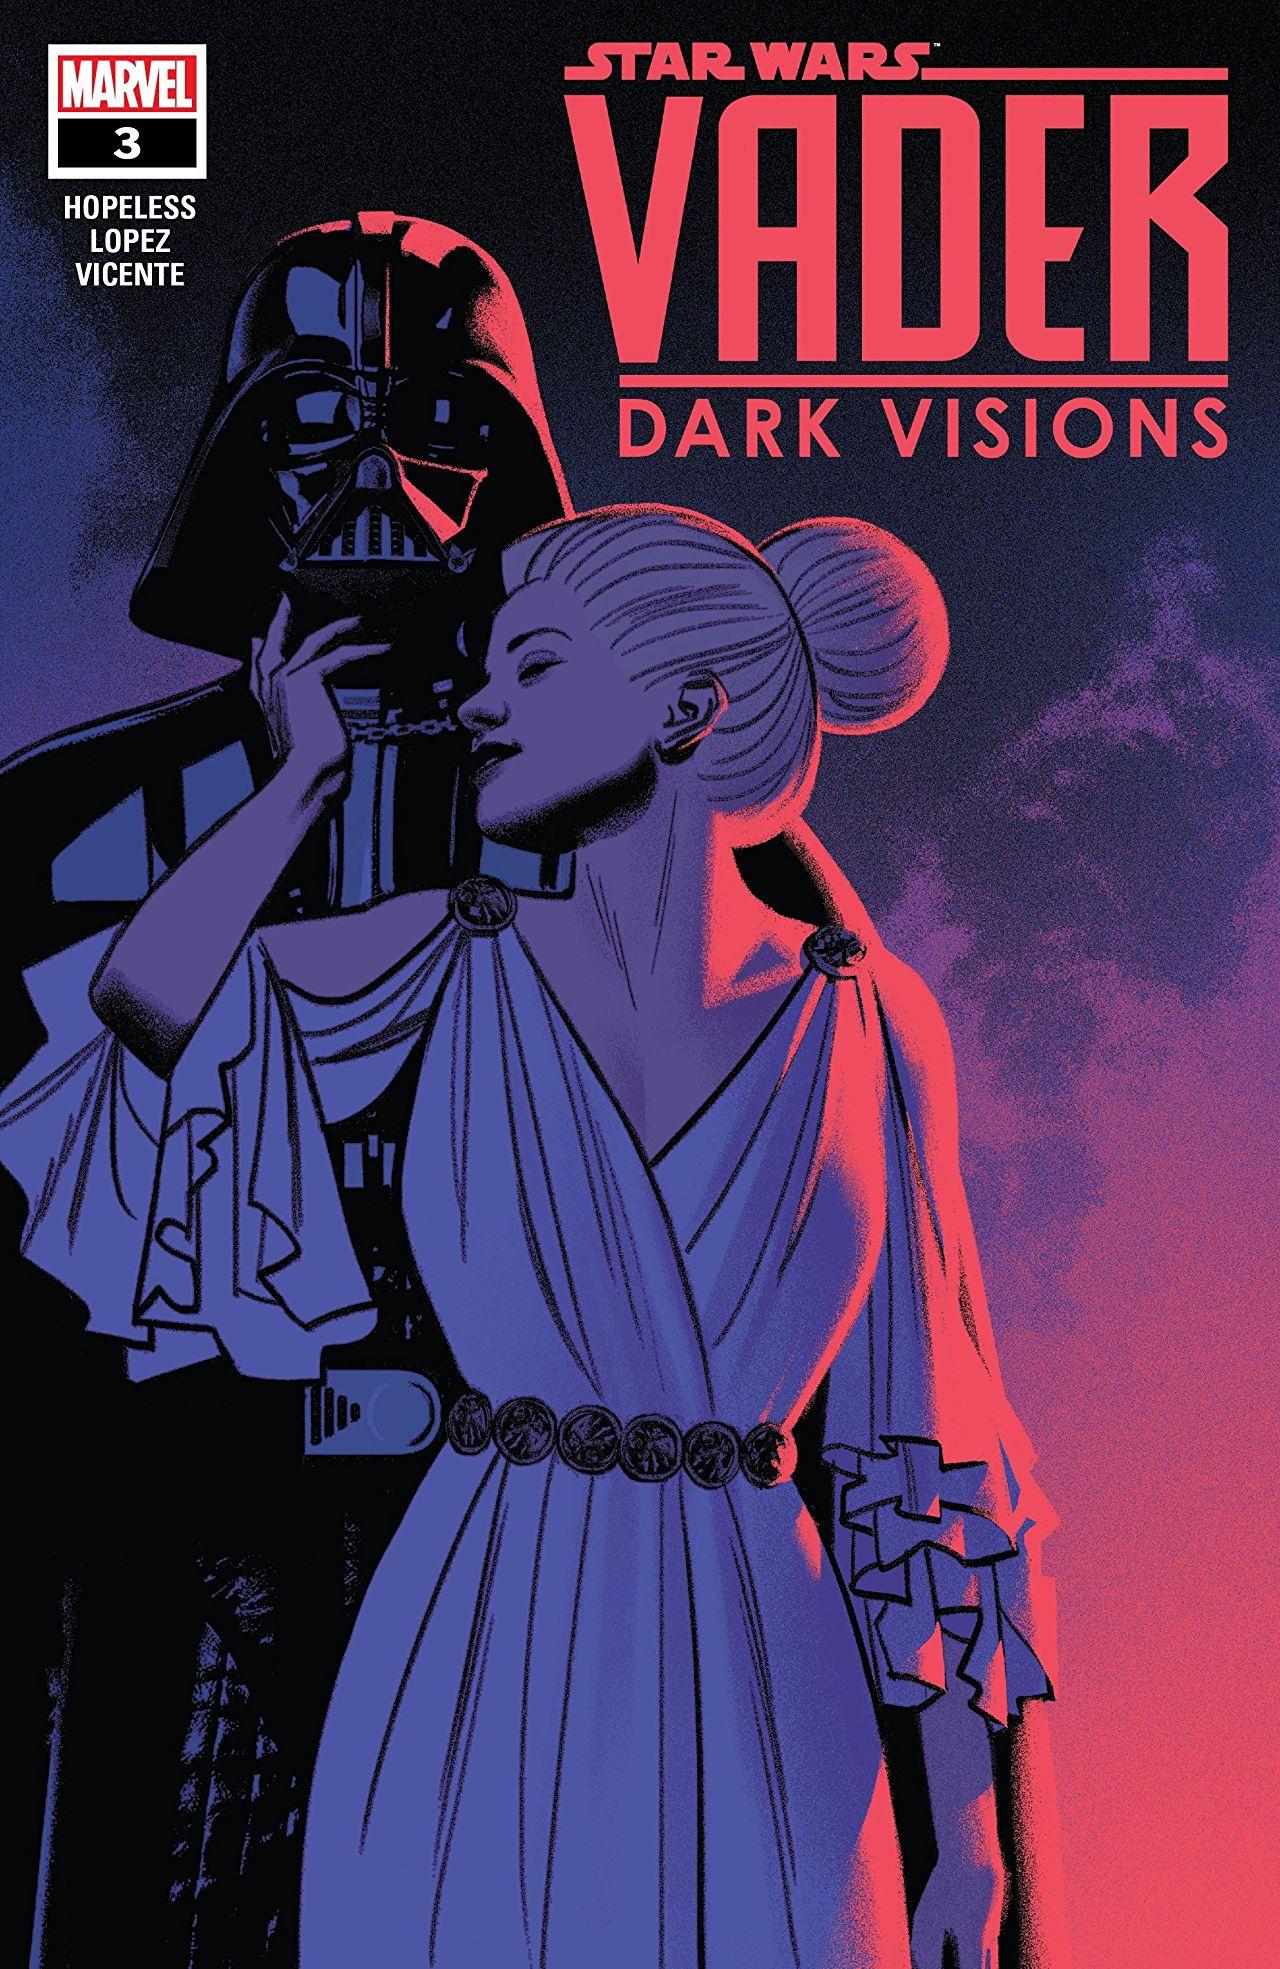 Star Wars: Vader - Dark Visions Vol. 1 #3